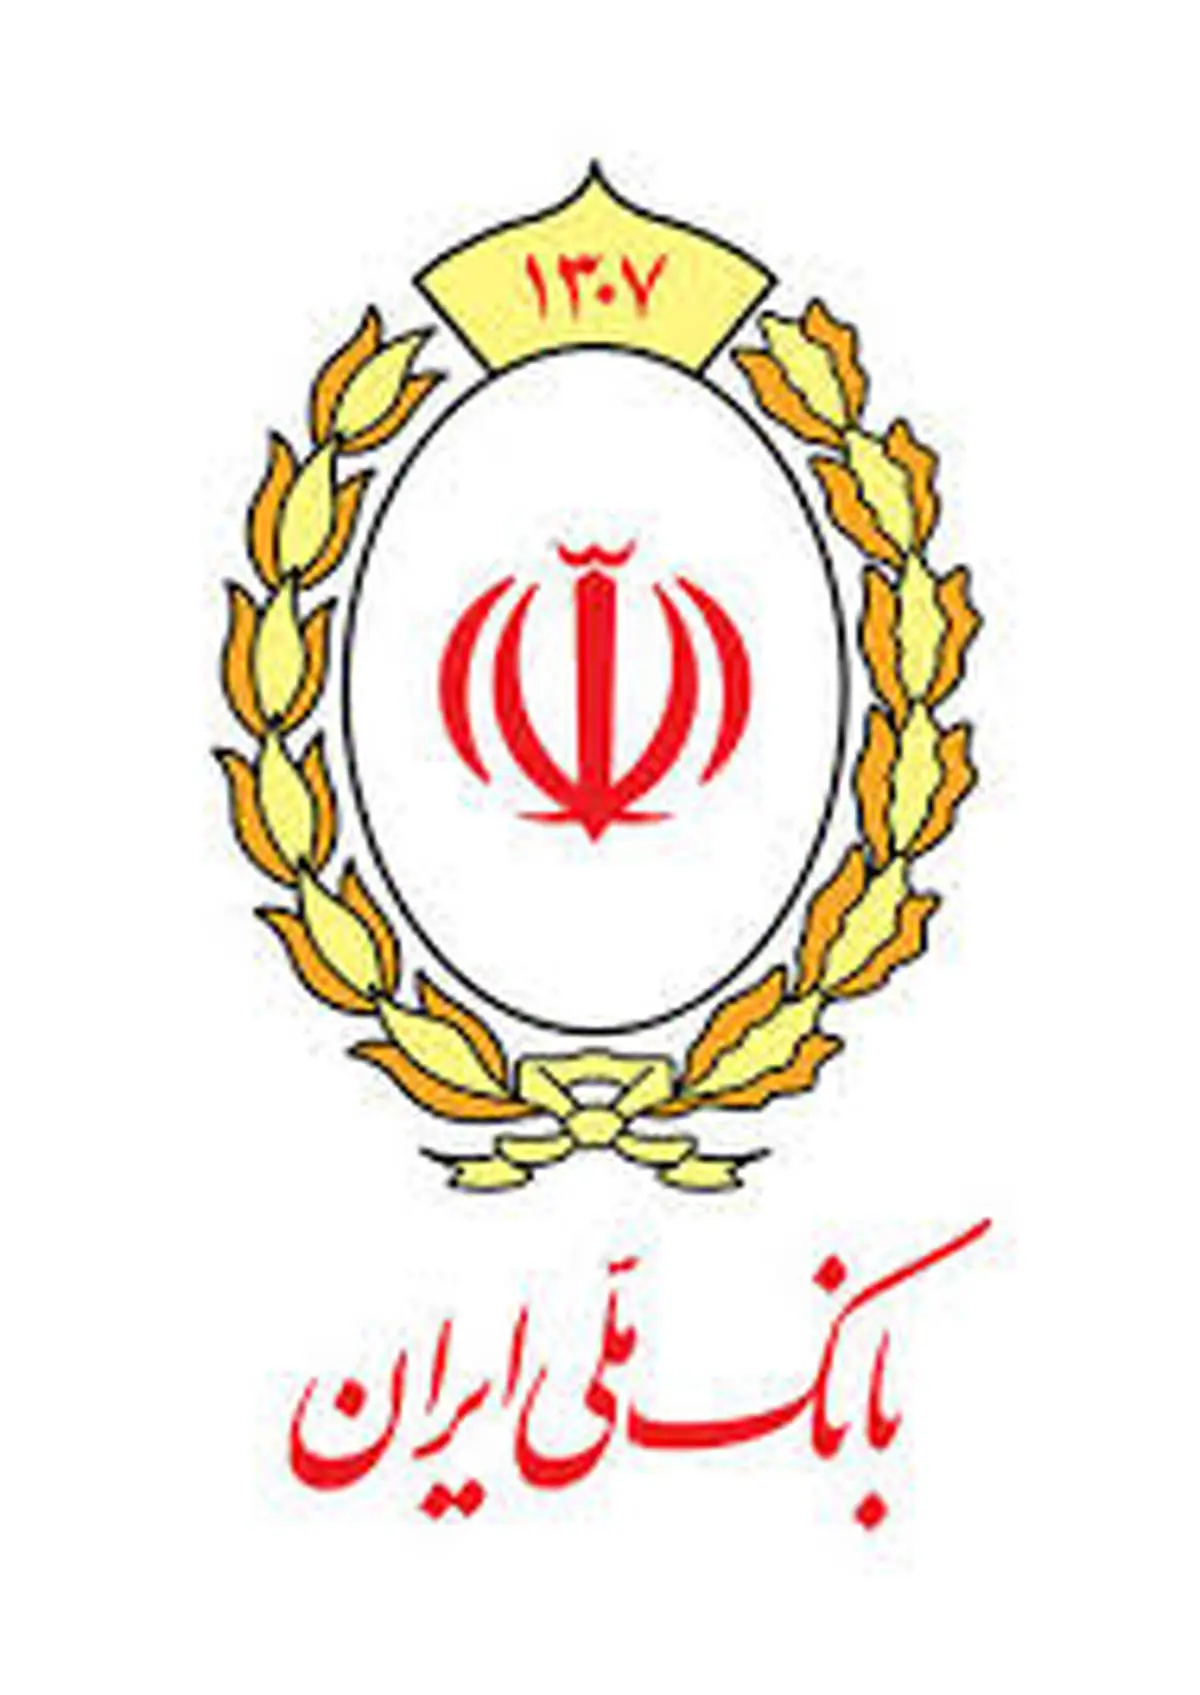 نیاز مشتریان، ملاک برنامه ریزی های بانک ملی ایران

